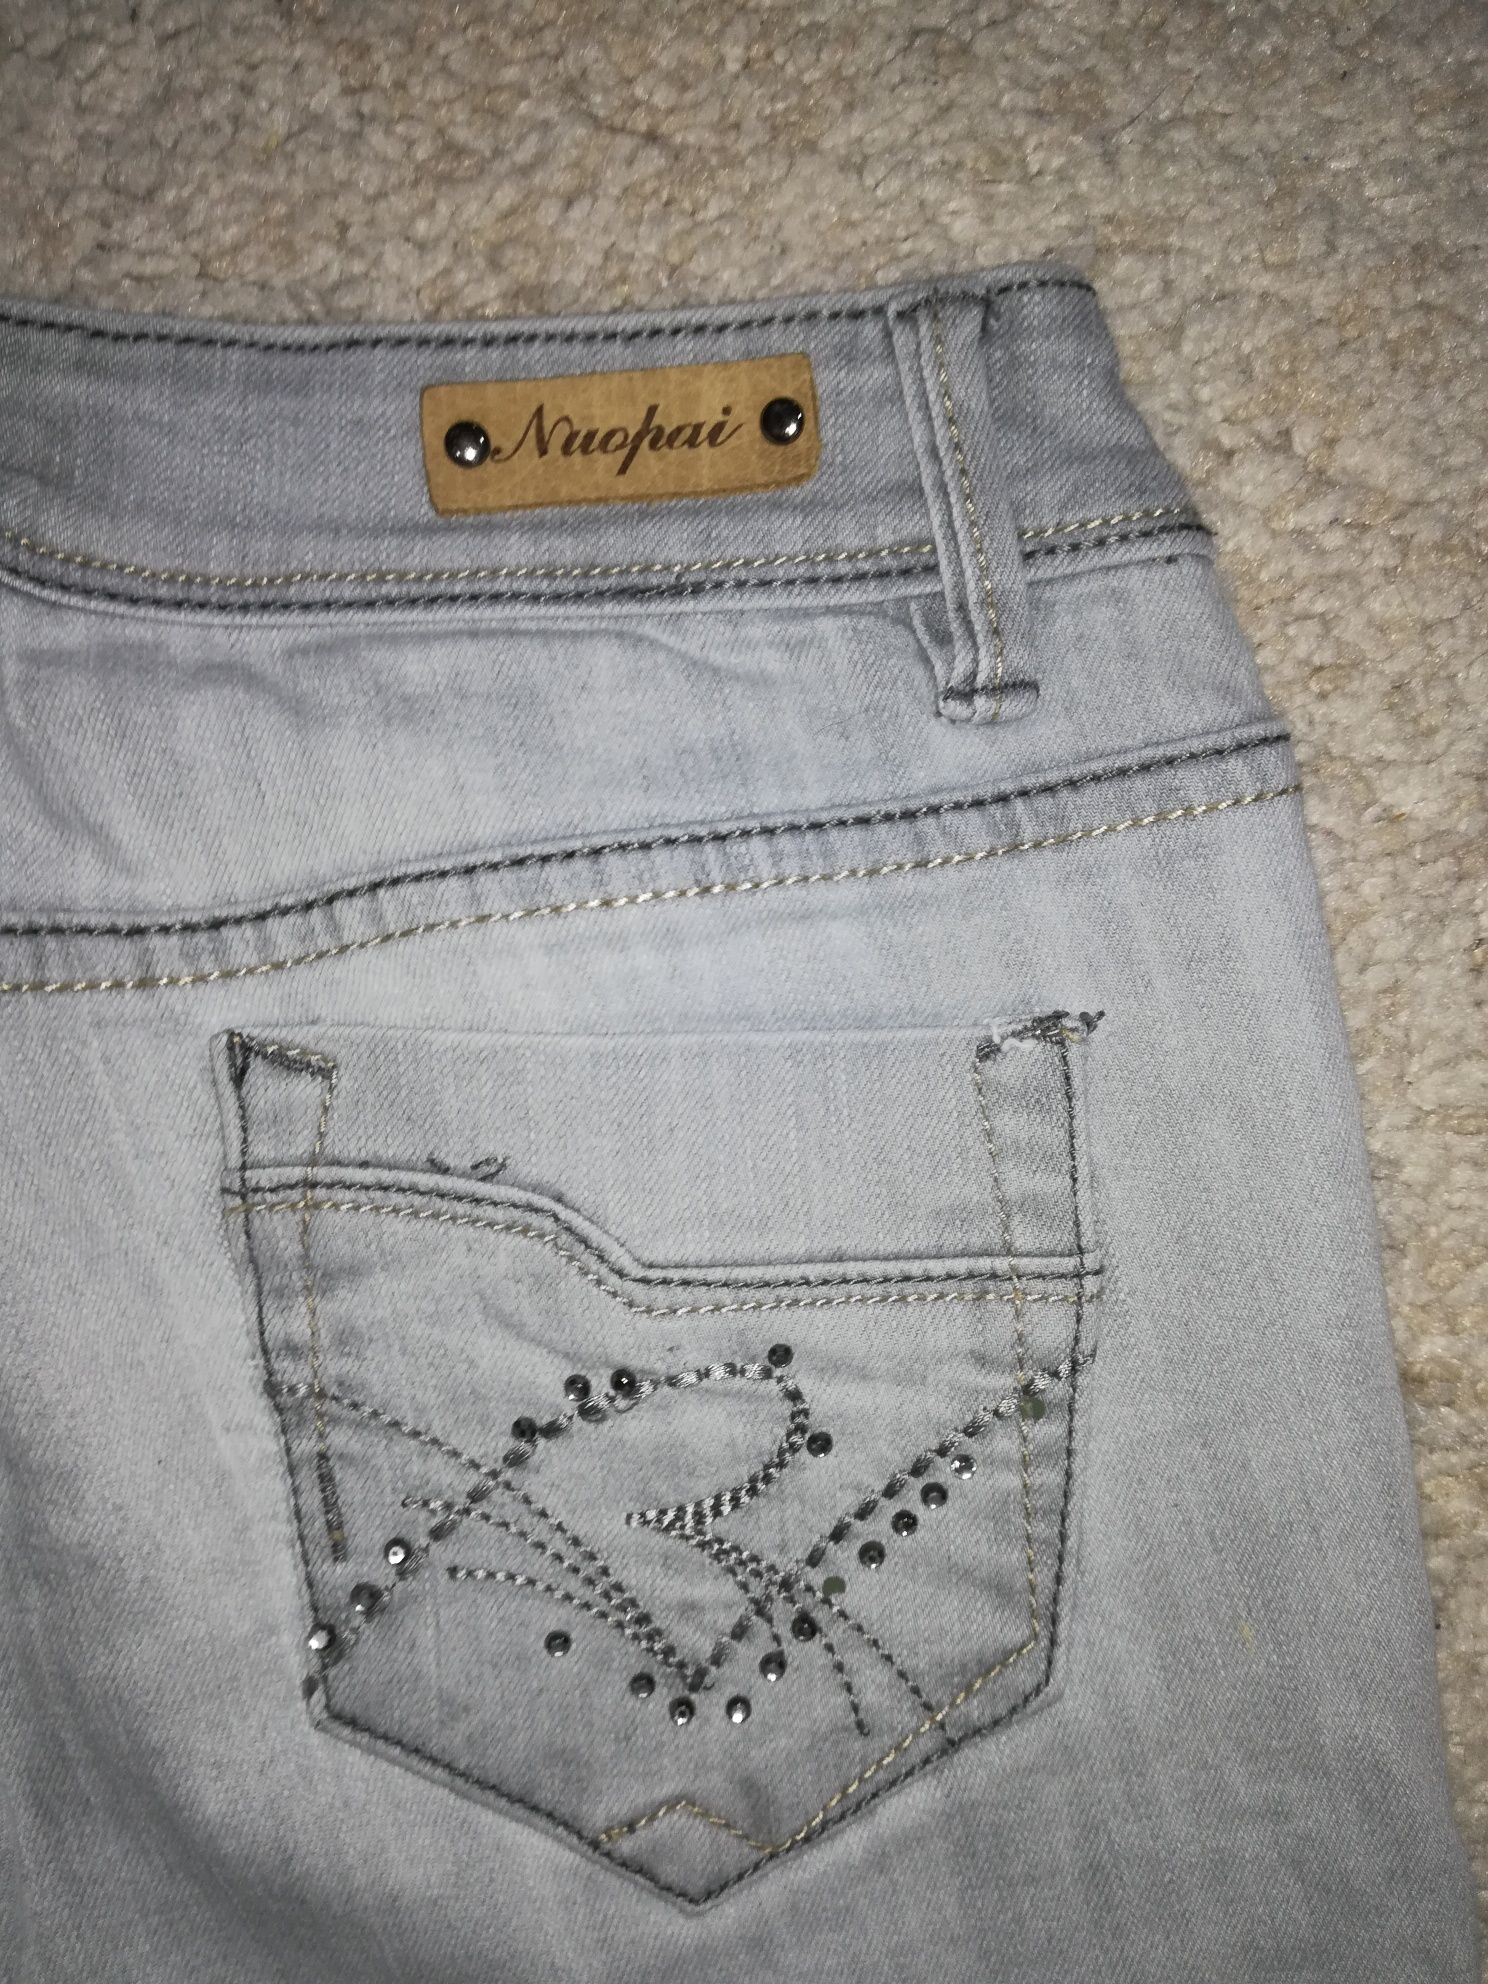 Szare przecierane jeansy spodnie damskie rurki rozm S/M